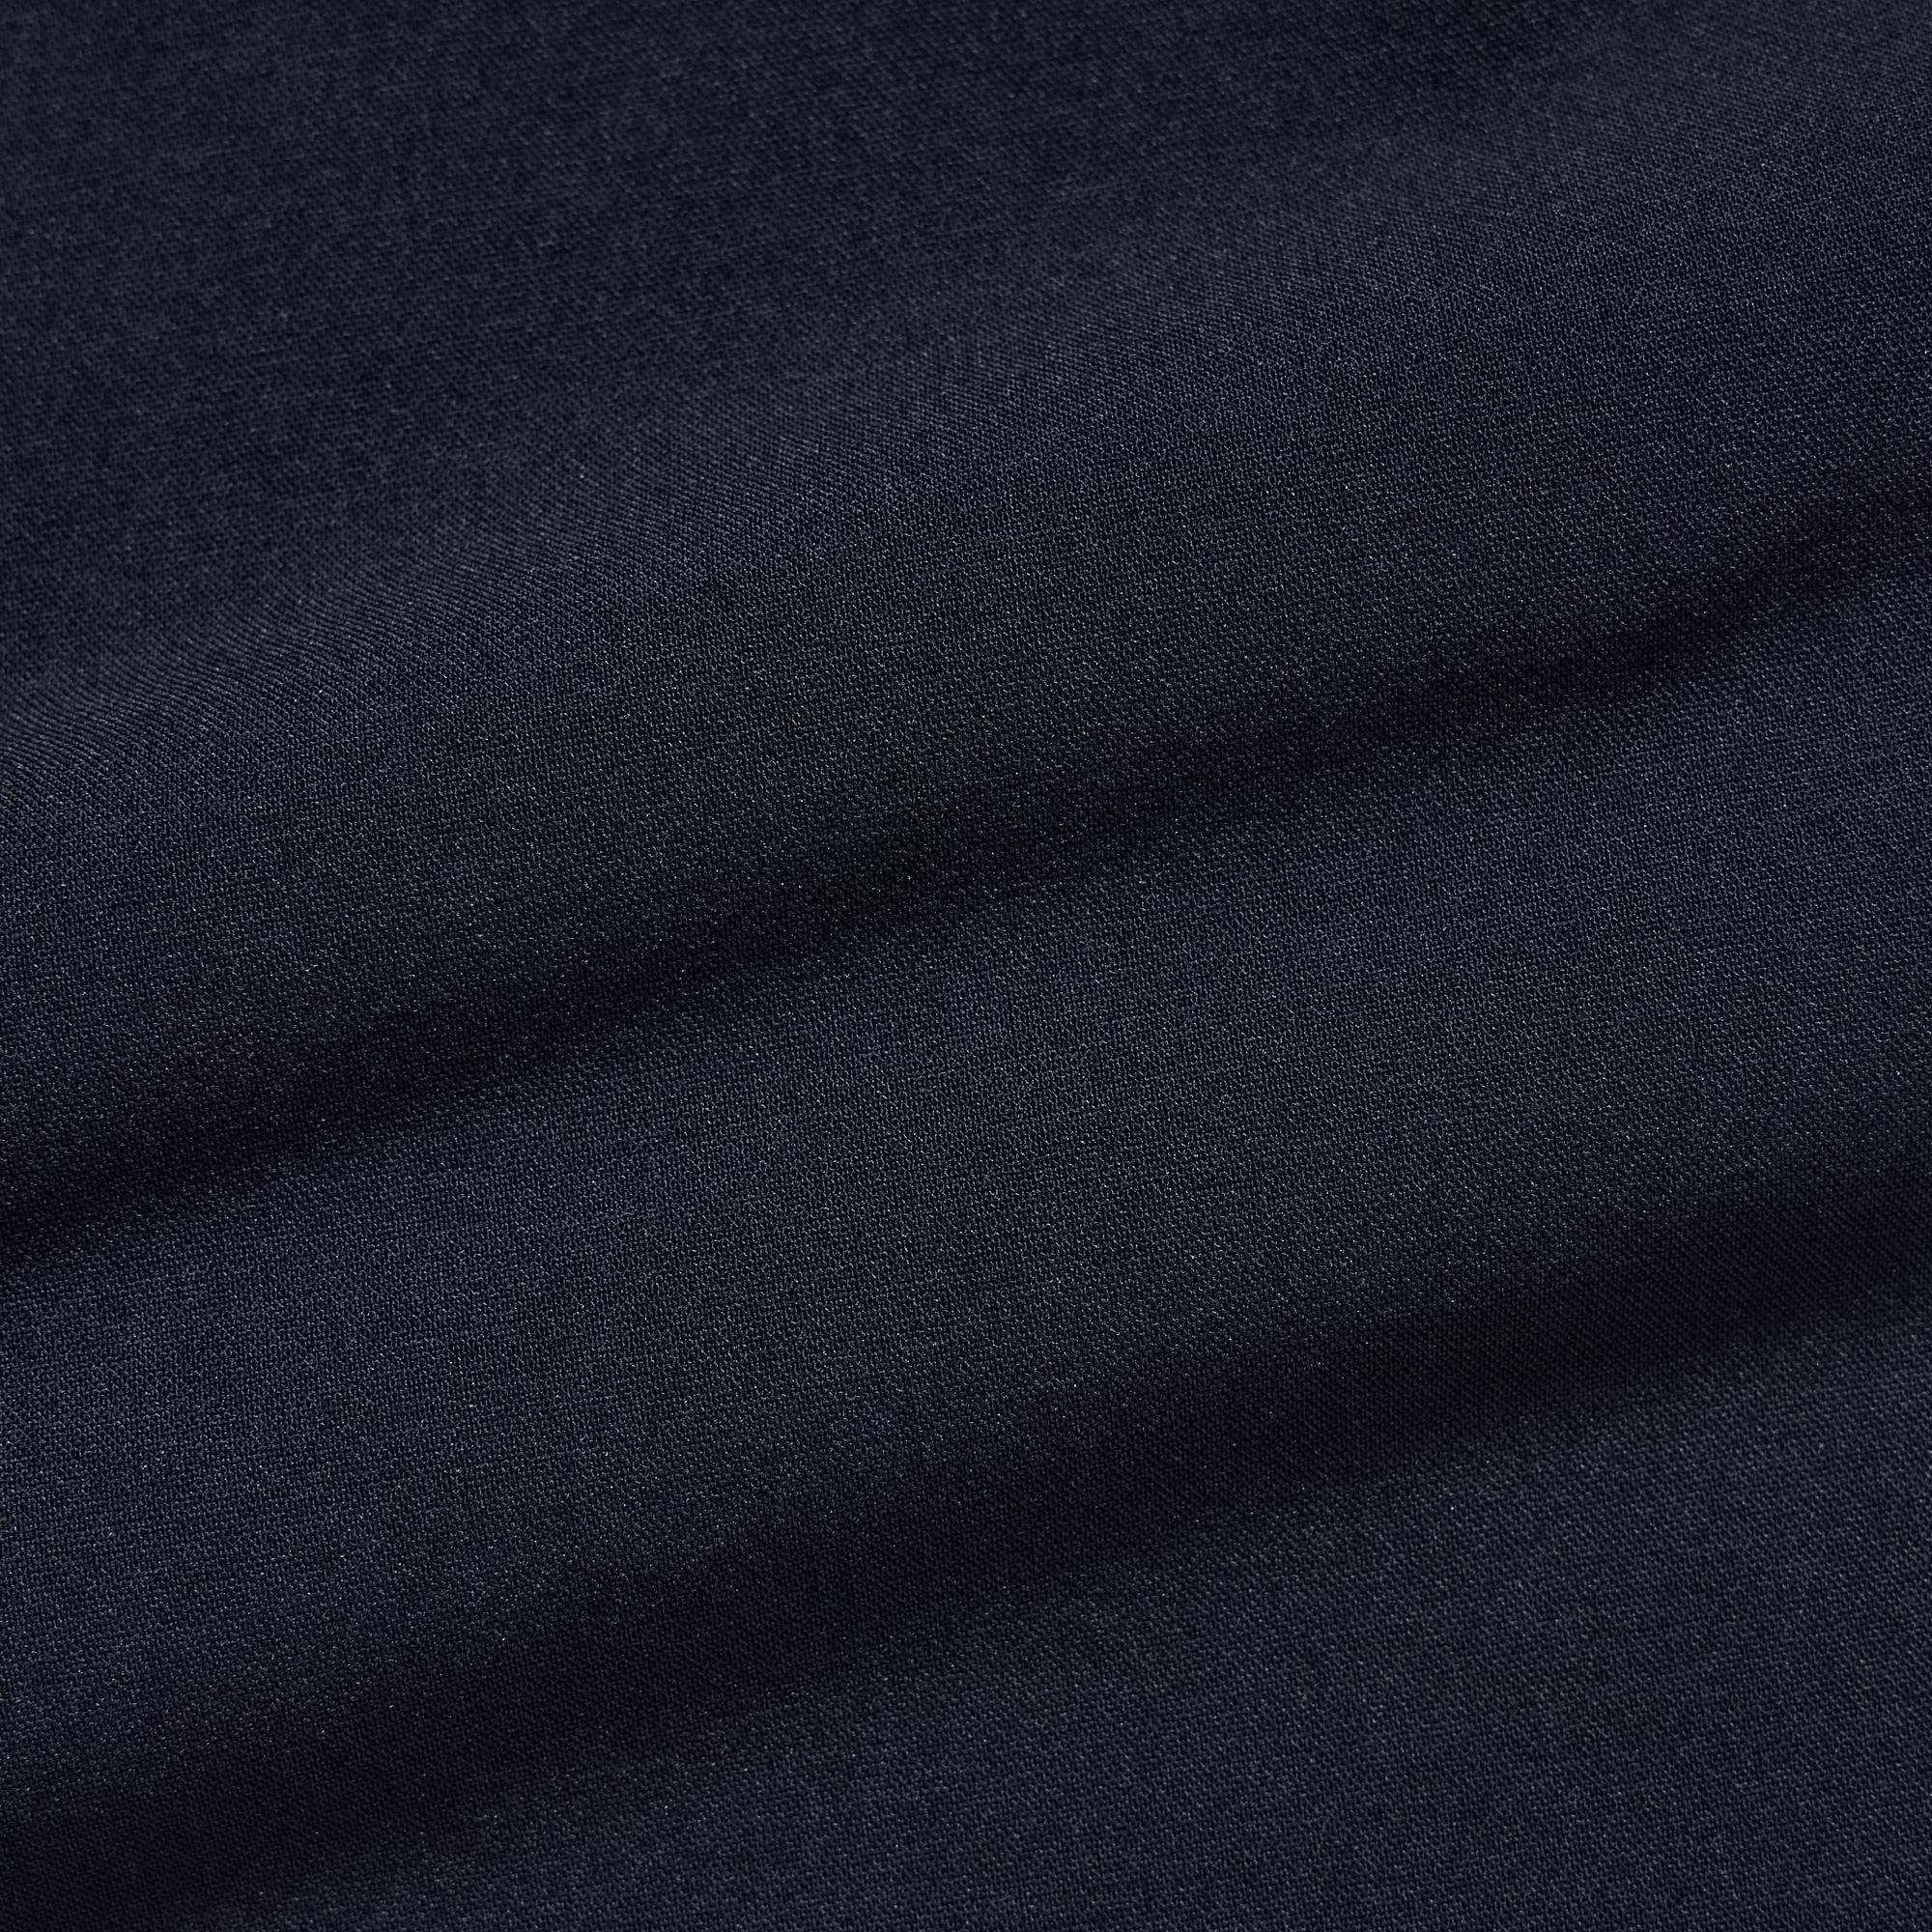 AirSense Ultra Light Wool-Like Trousers | UNIQLO UK